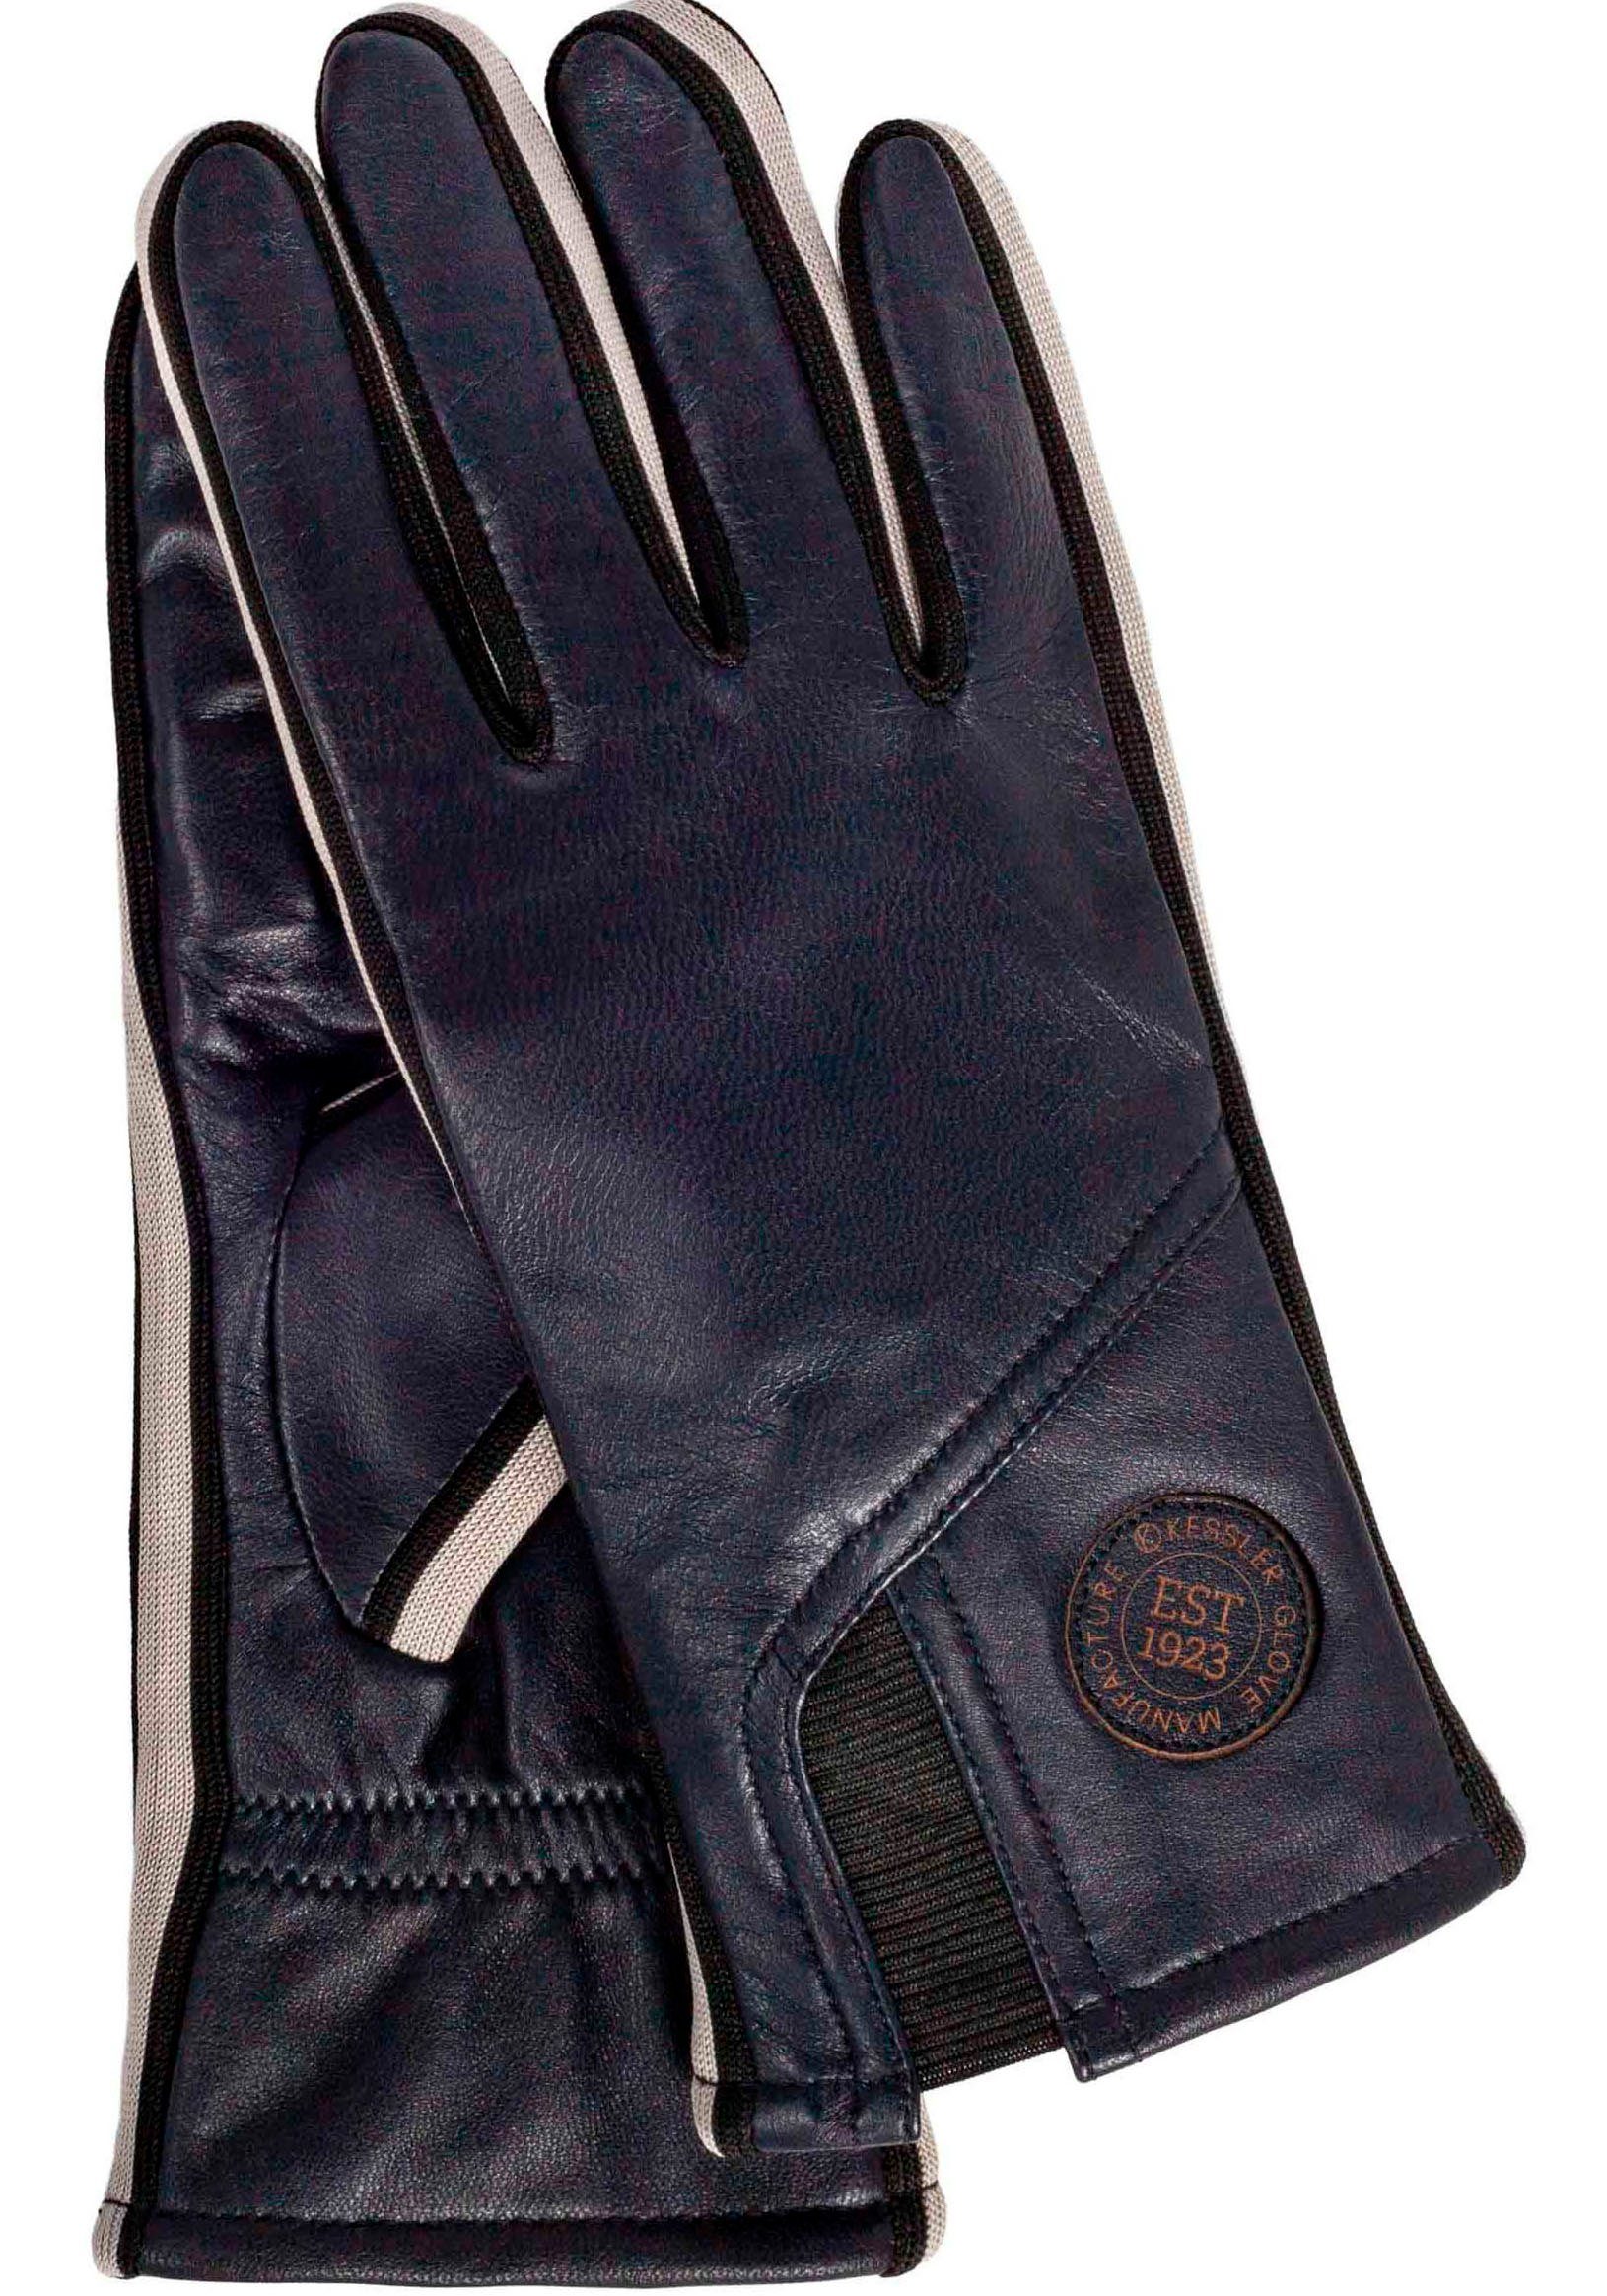 Lederhandschuhe Touchfunktion Gil dark Look mit Sneaker- Design im Touch KESSLER sportliches blue